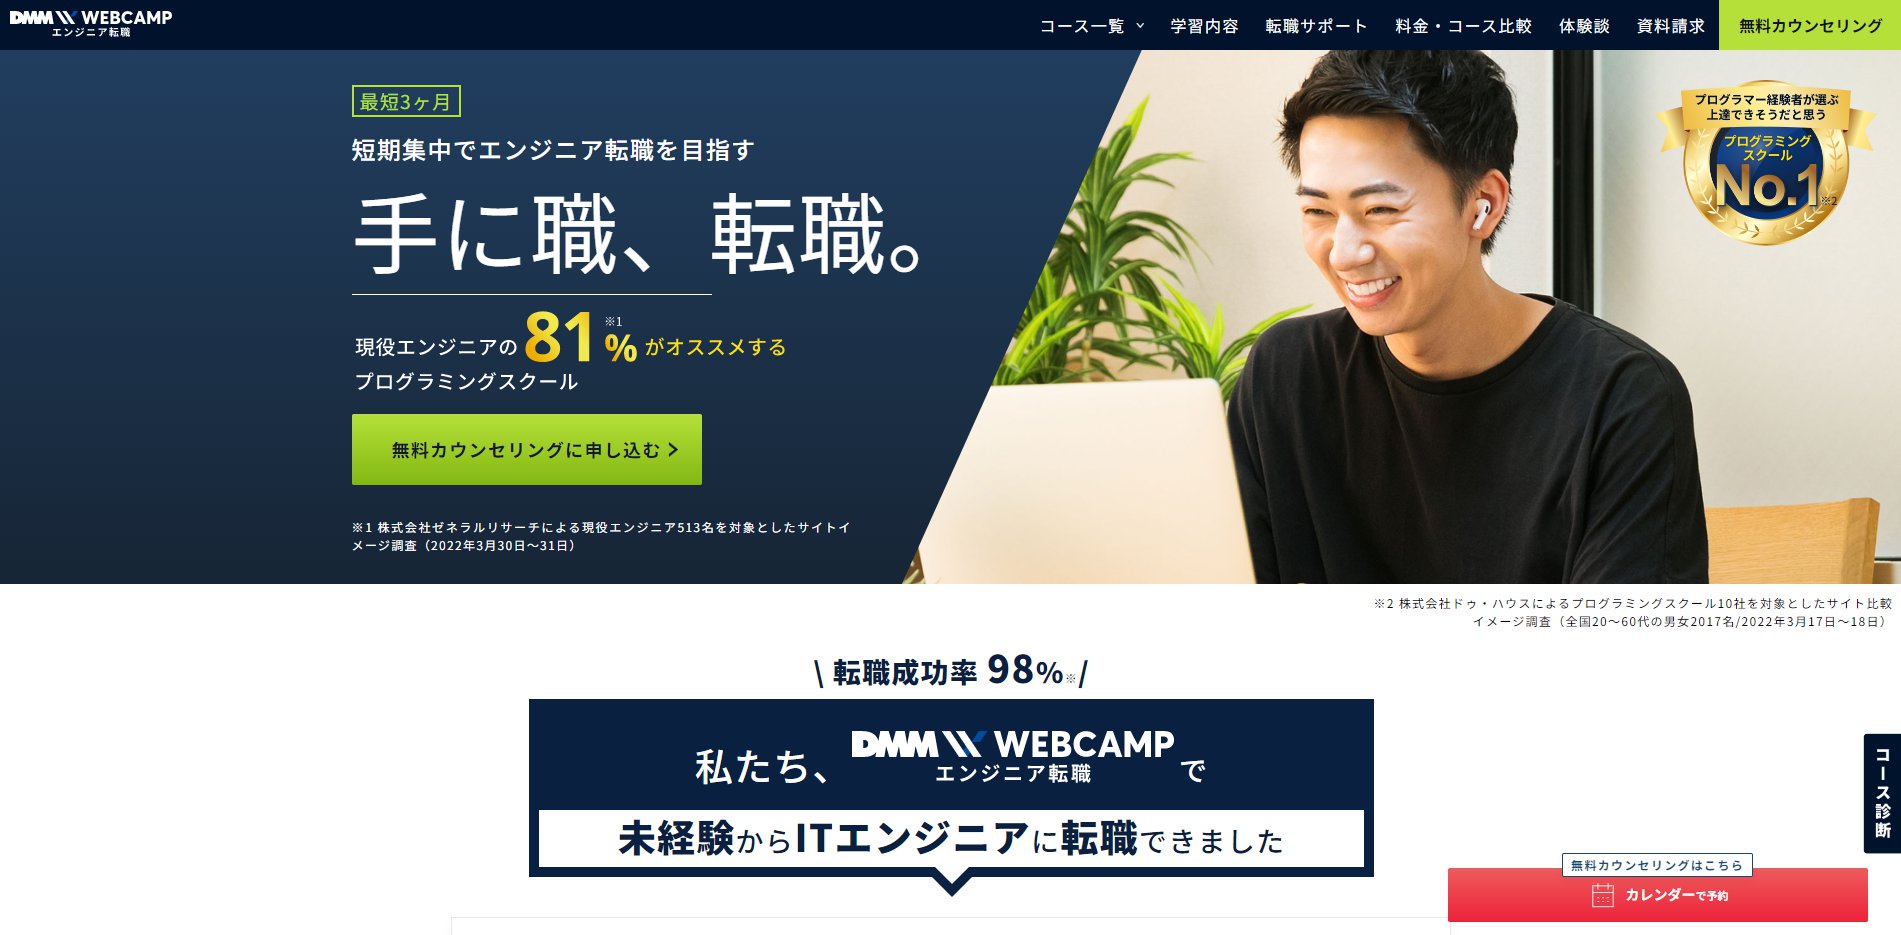 就職/転職支援プログラミングスクール-DMM WEBCAMP(ウェブキャンプ)